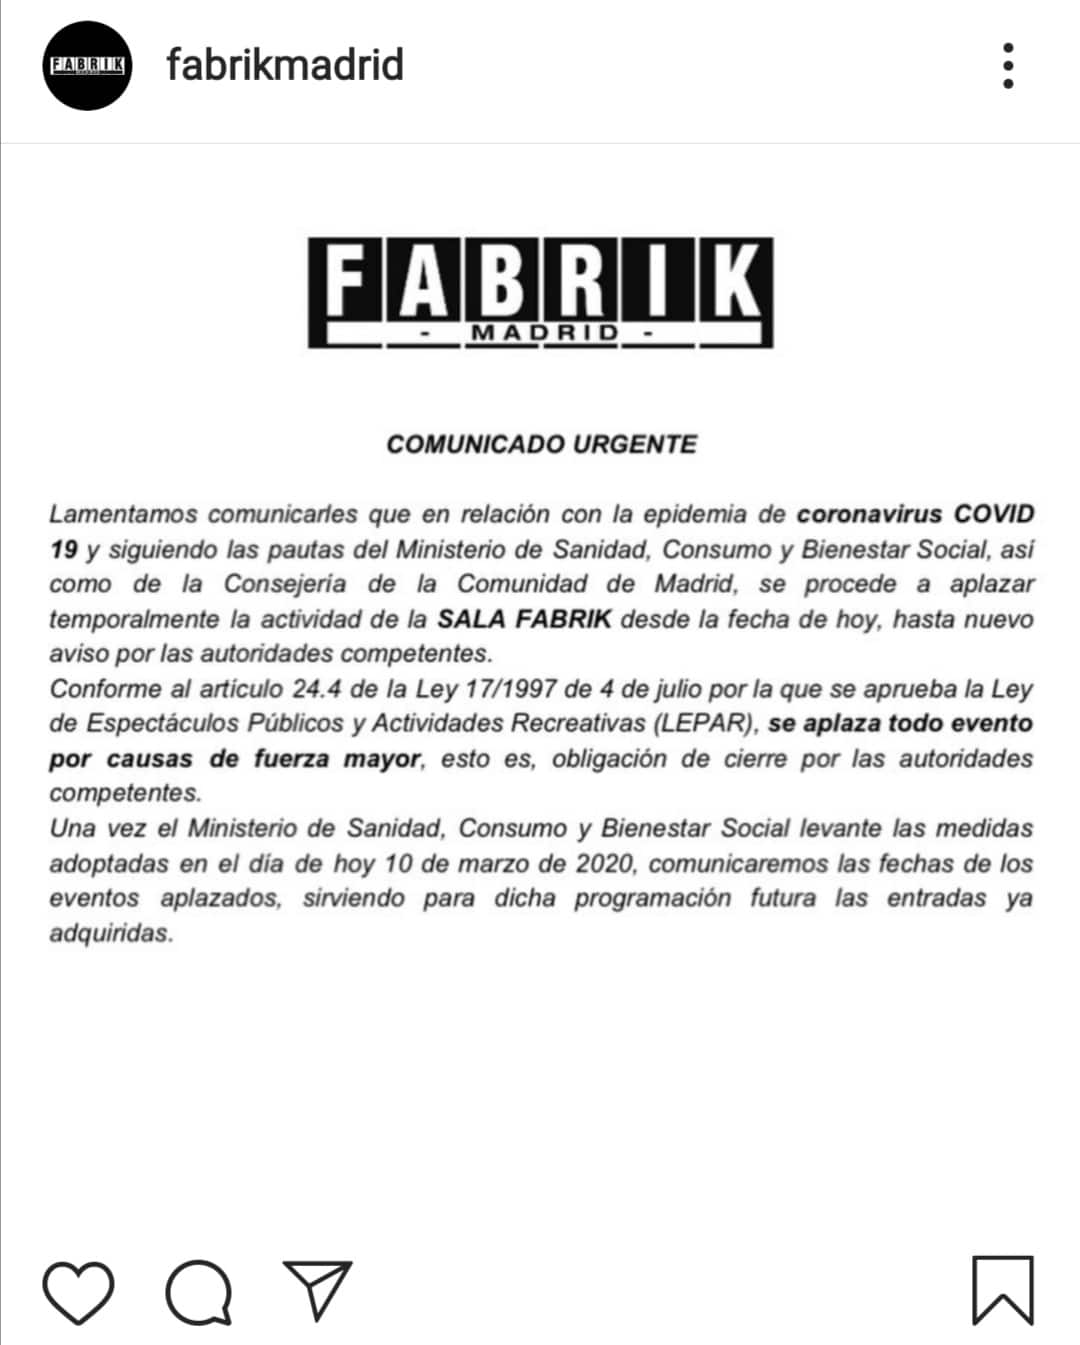 Fabrik cierra sus puertas a causa del coronavirus